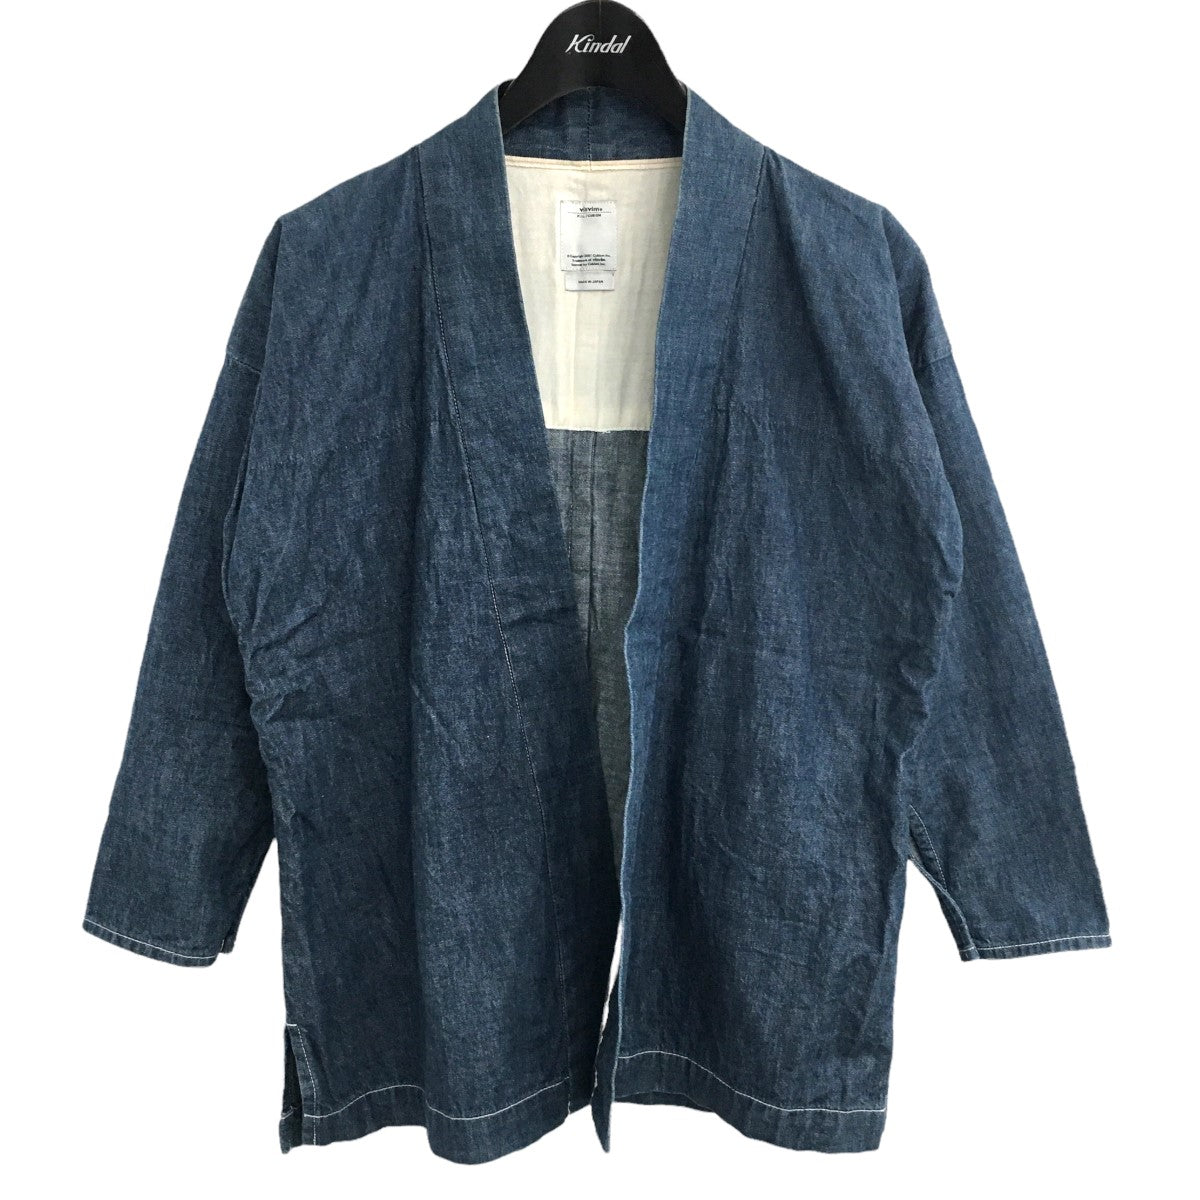 7,980円Visvim kimono JKT デニム